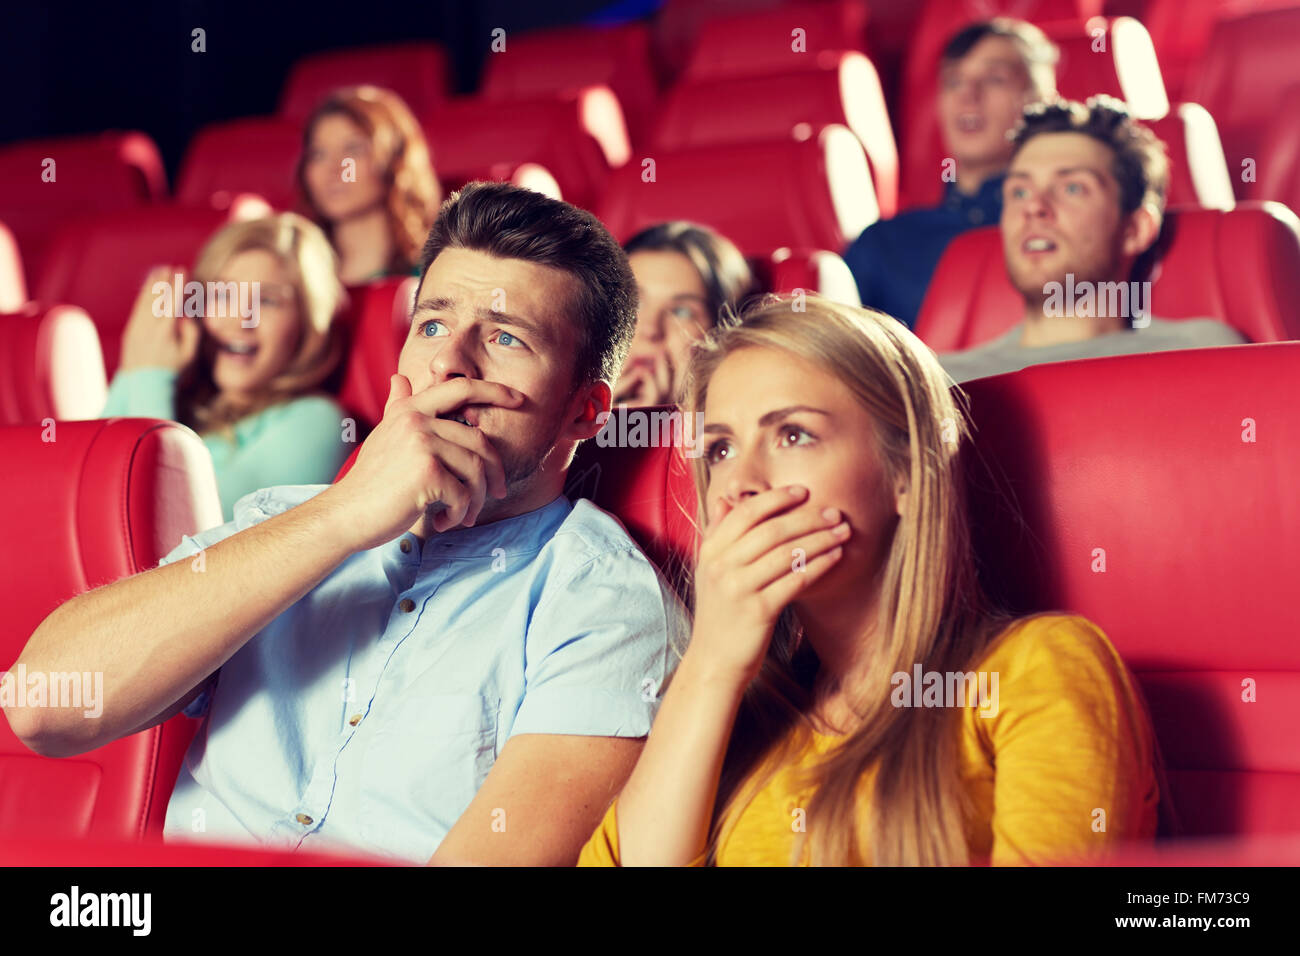 Женщины для развлечения. Зрители в кинотеатре. Счастливые люди в кинотеатре. Эмоции людей в кинотеатре. Люди сидят в кинотеатре.